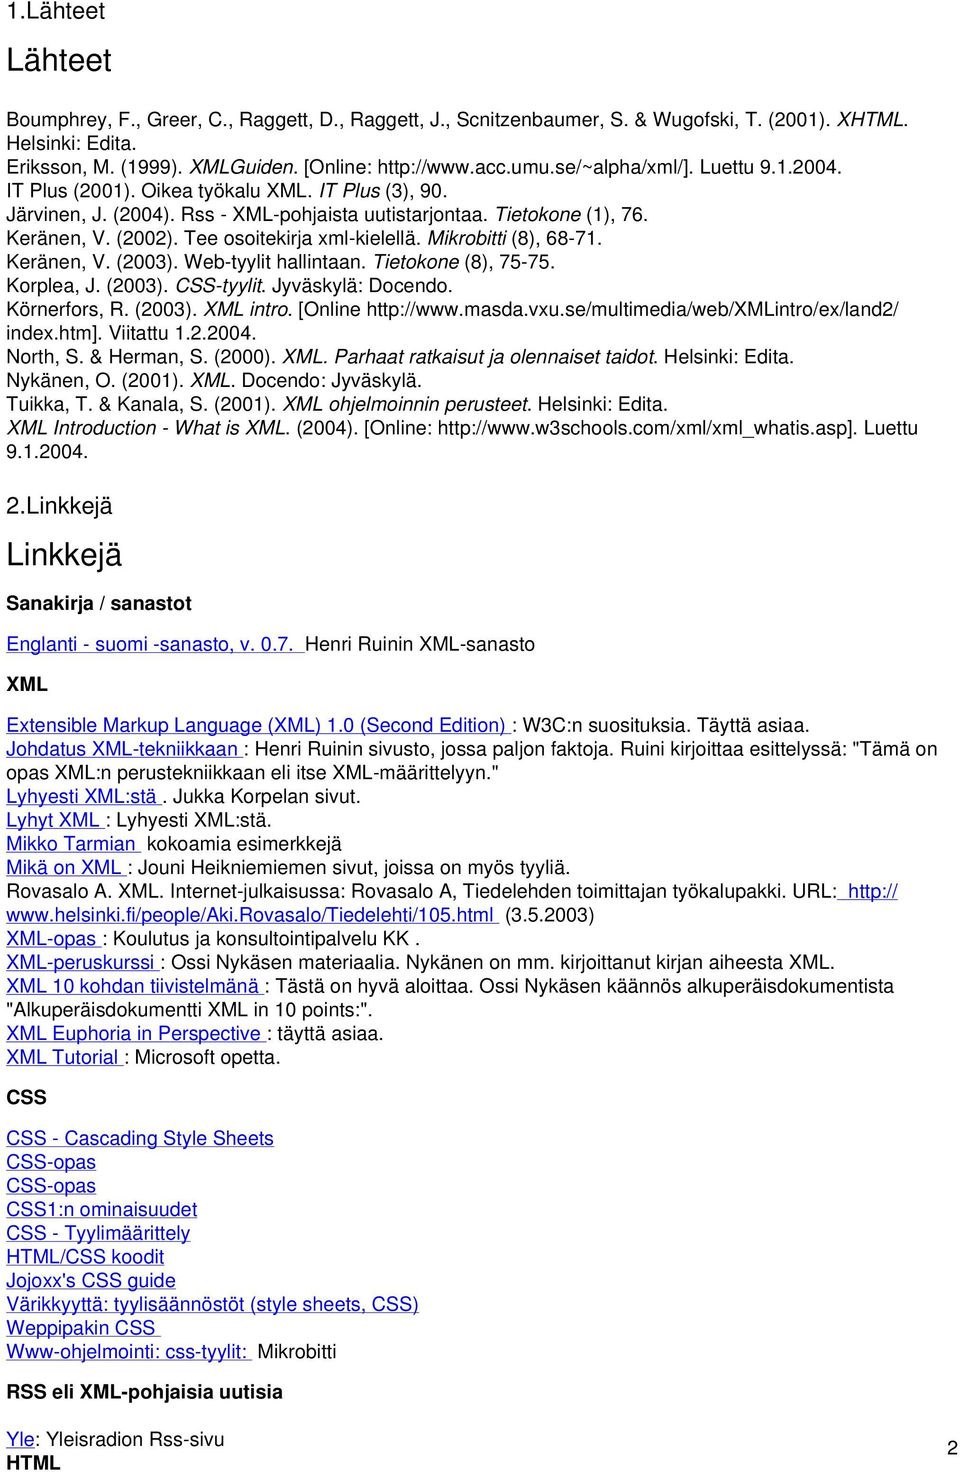 Tee osoitekirja xml-kielellä. Mikrobitti (8), 68-71. Keränen, V. (2003). Web-tyylit hallintaan. Tietokone (8), 75-75. Korplea, J. (2003). CSS-tyylit. Jyväskylä: Docendo. Körnerfors, R. (2003). XML intro.